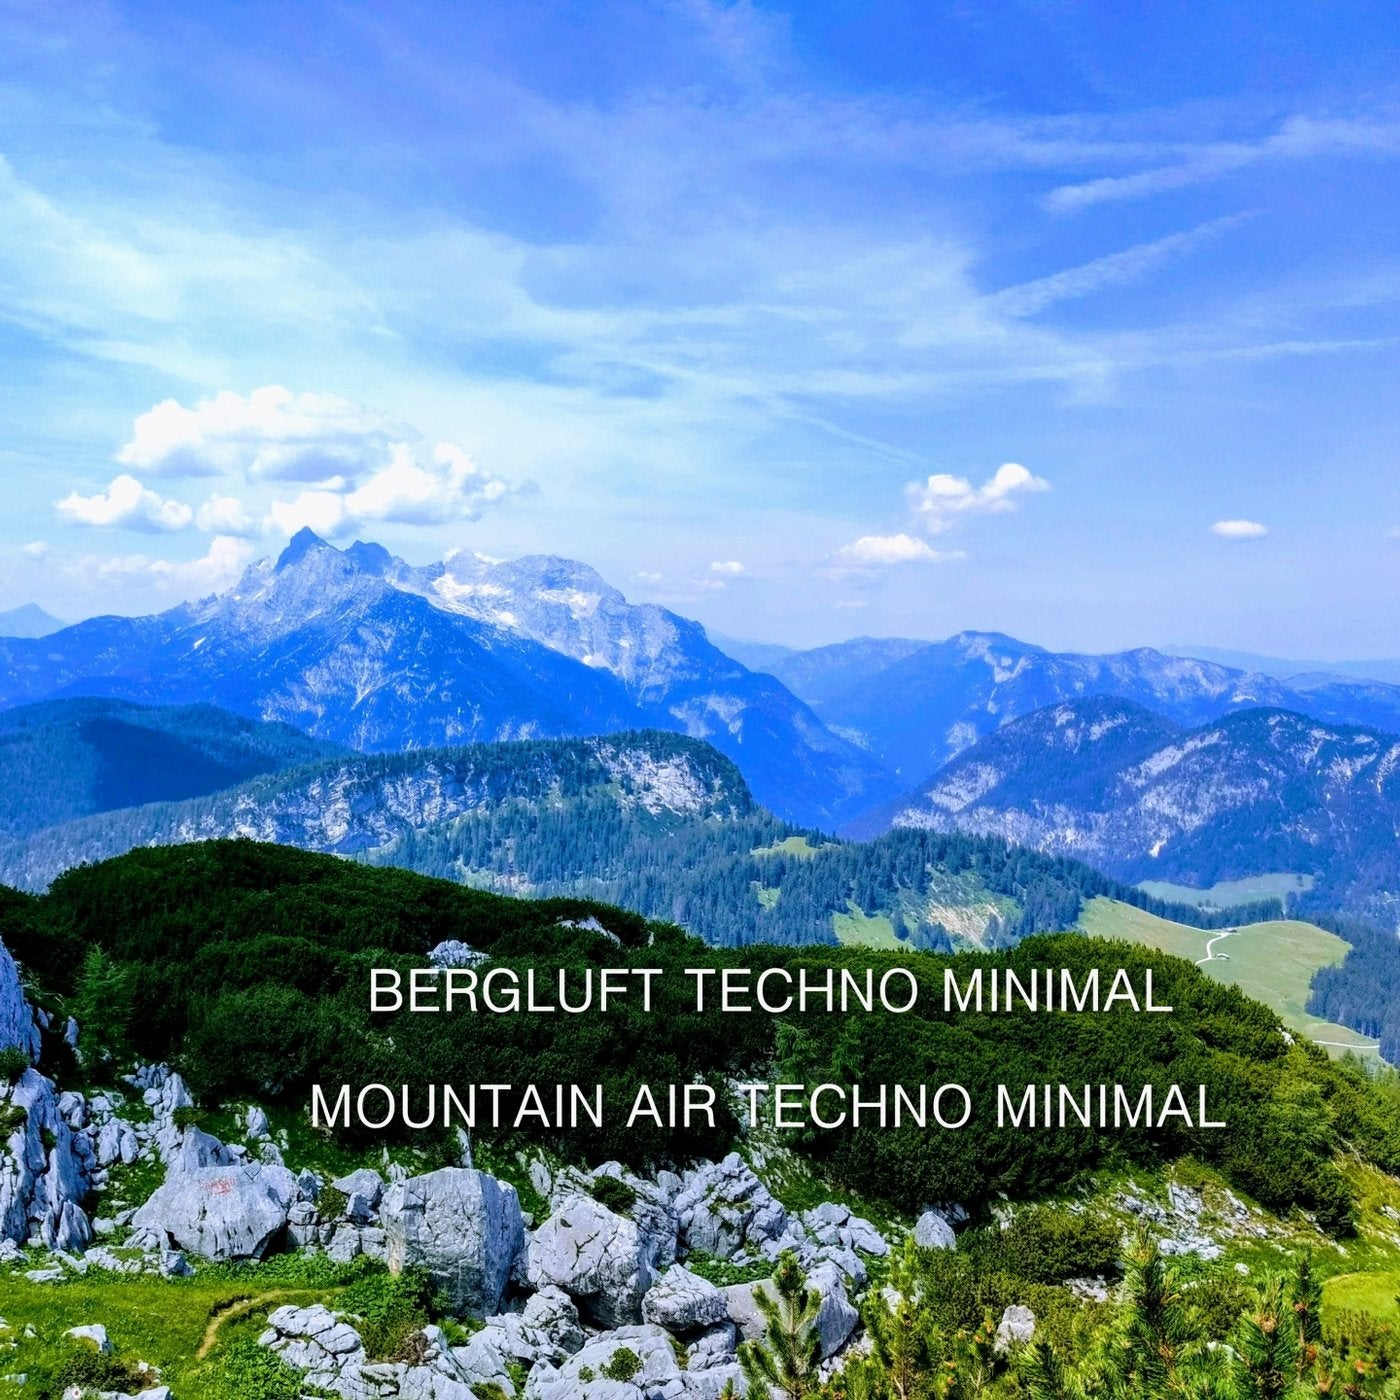 Mountain Air Techno Minimal